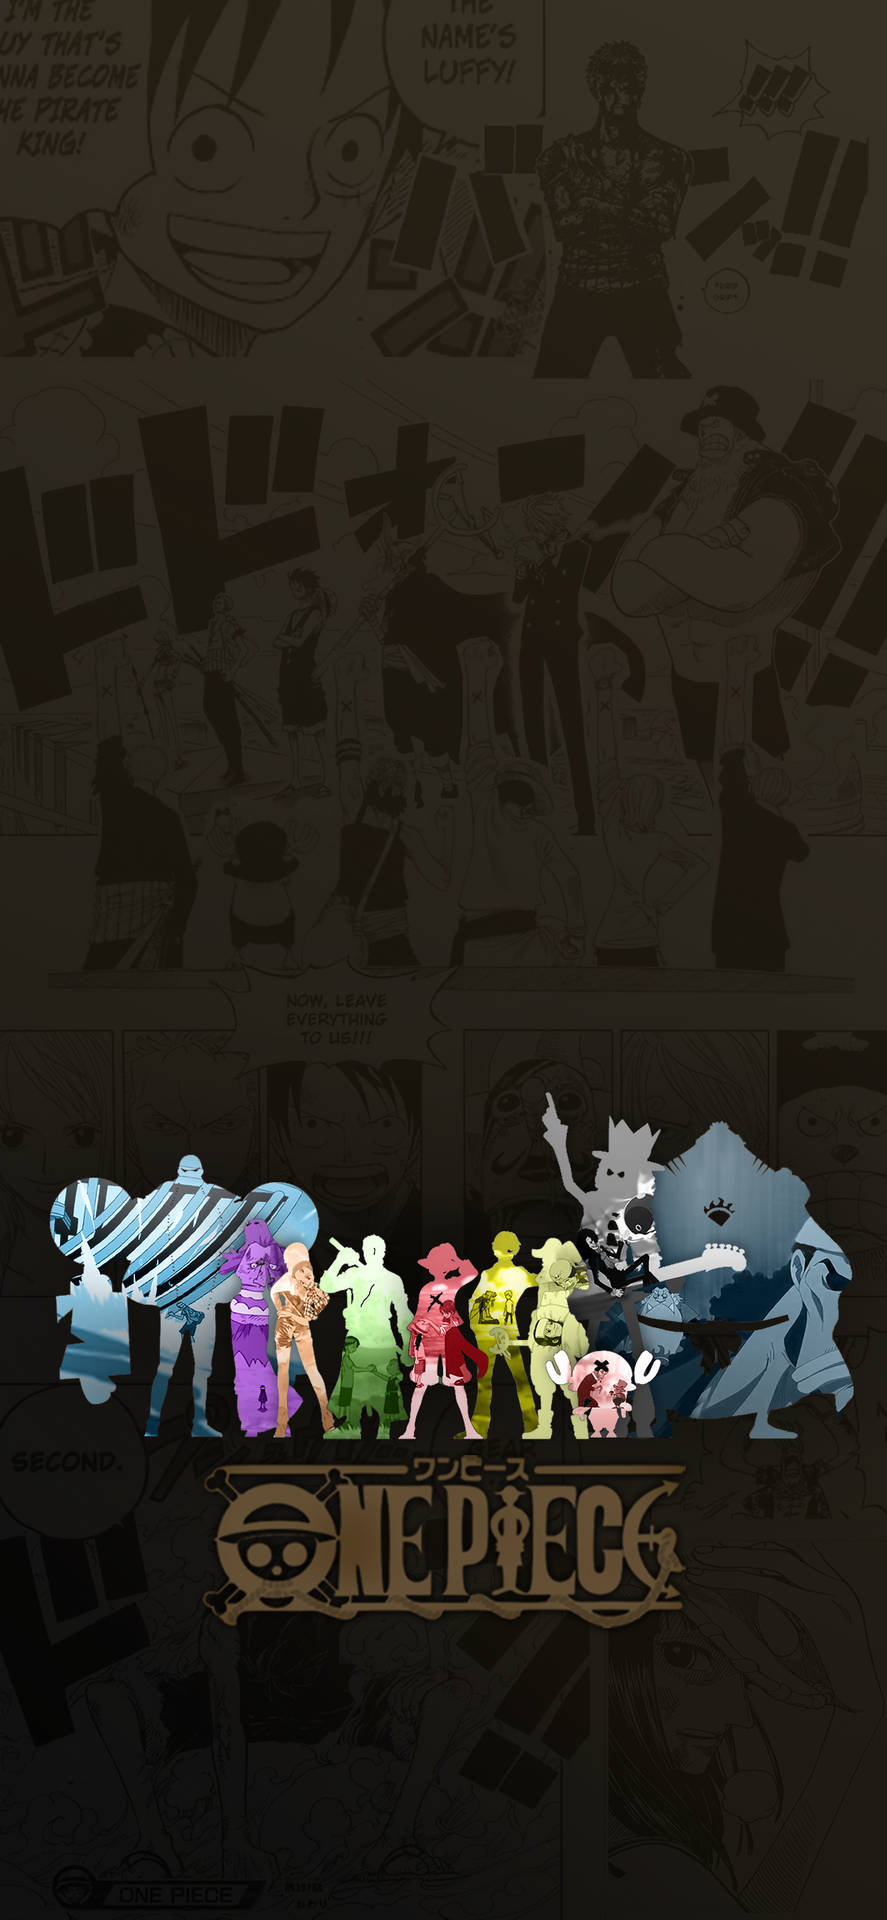 Wallpaperen Färgglad One Piece-affisch Som Iphone-bakgrundsbild. Wallpaper